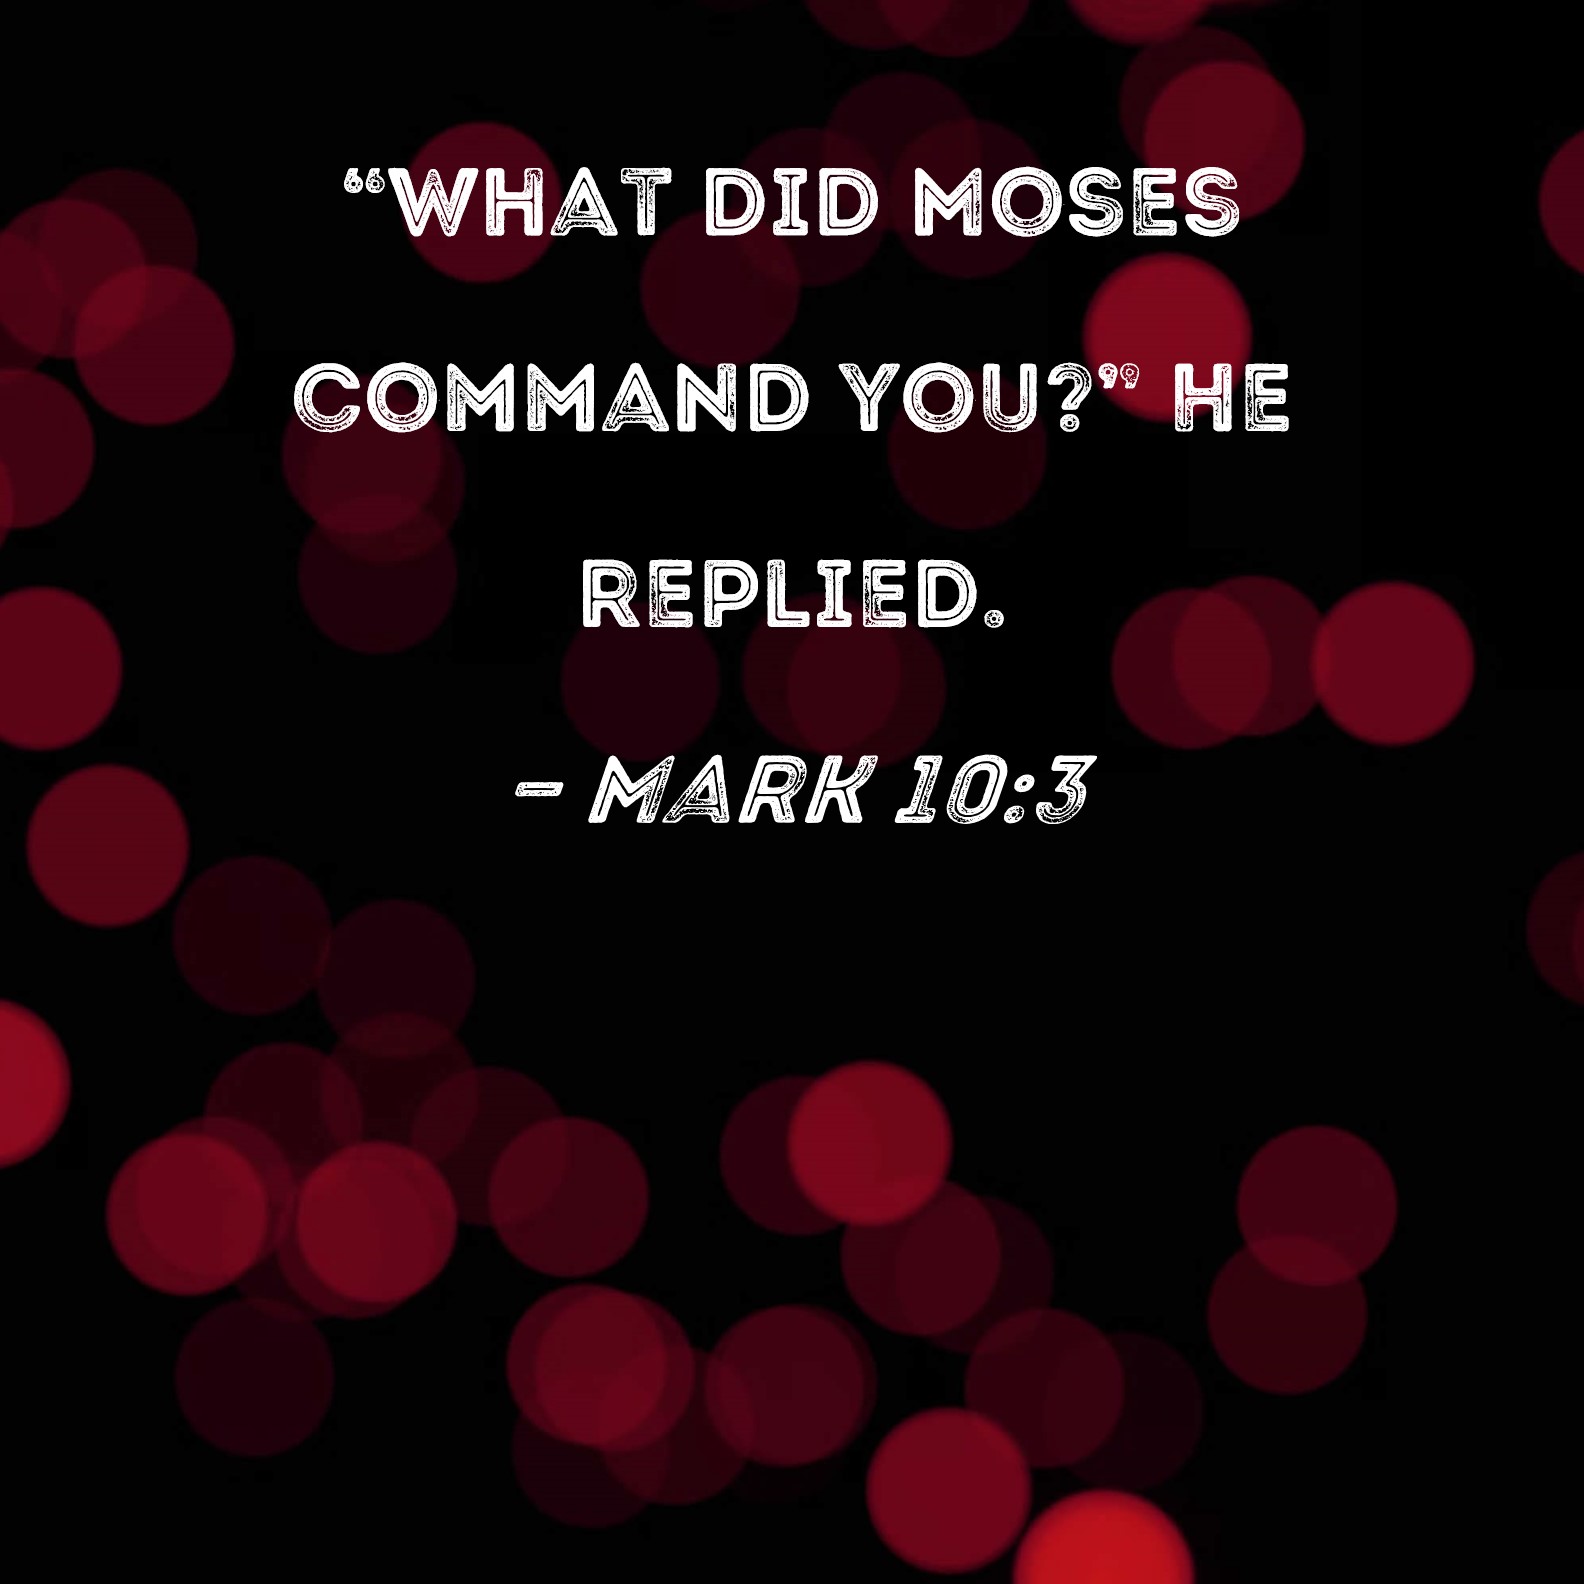 Mark 10:3 